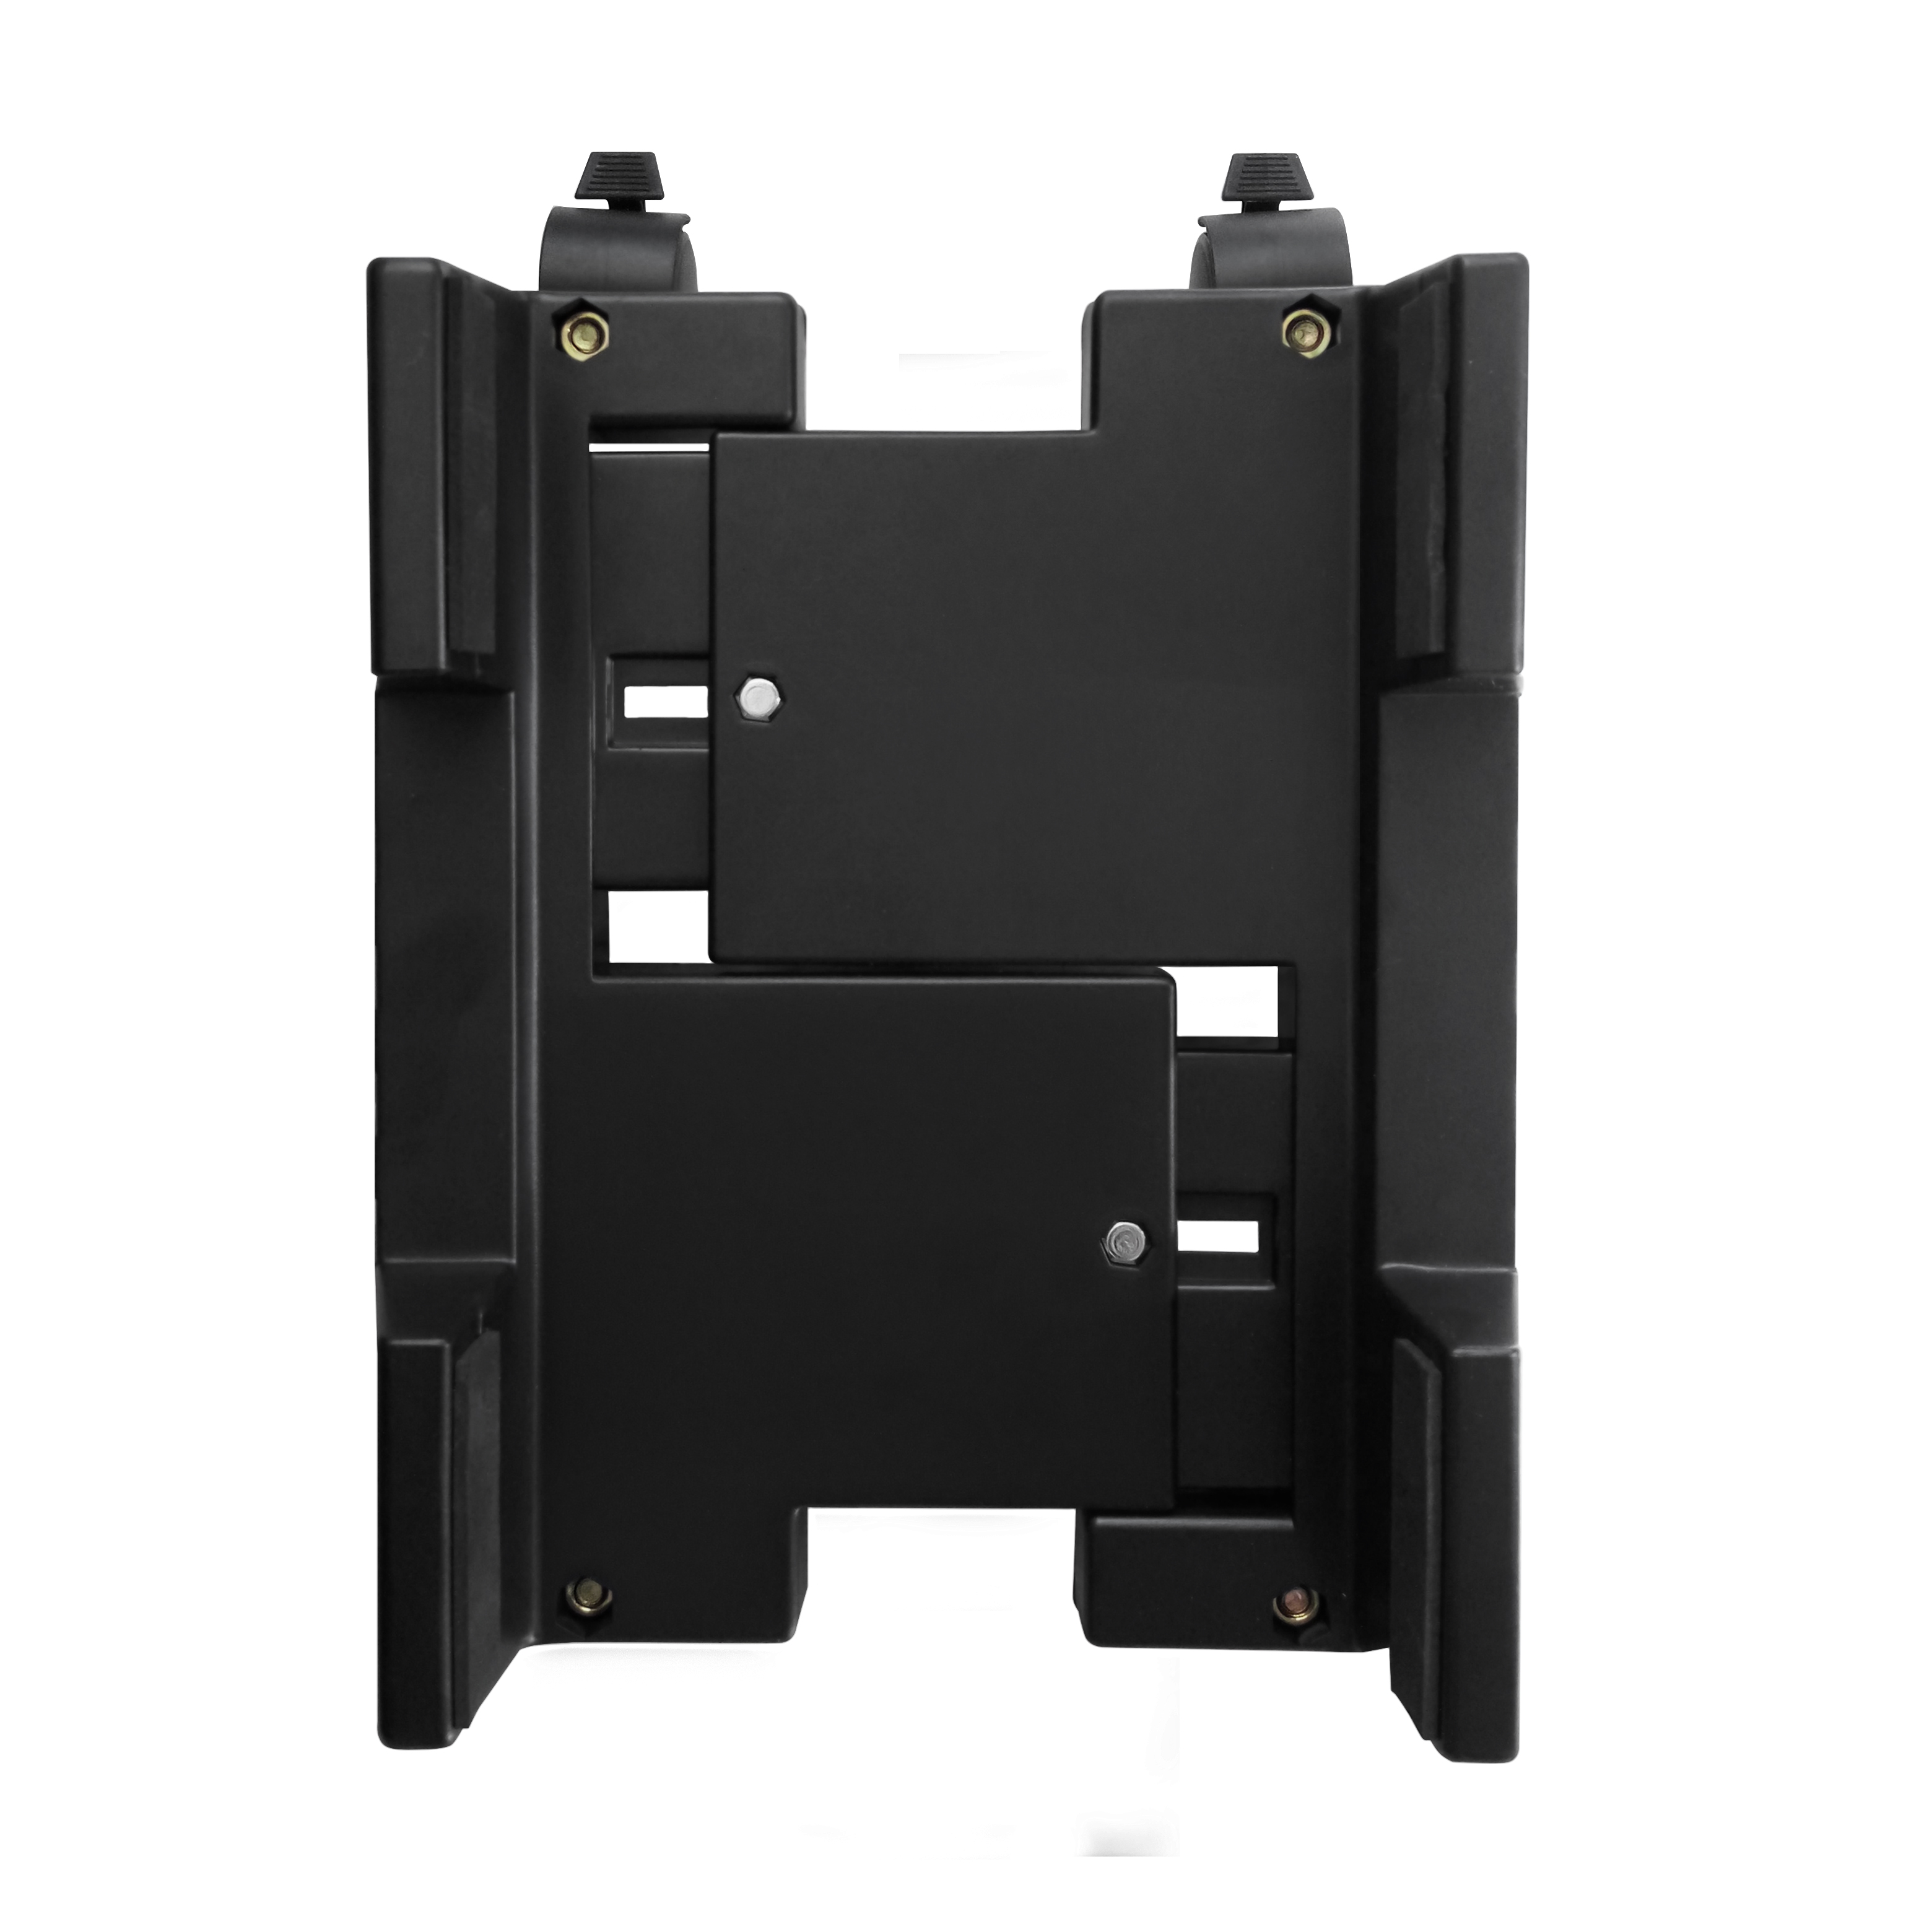 Supporto per PC case con rotelle Bloccabili Poggiapiedi & Ewent EW1290 Portacase Basics nero larghezza regolabile 